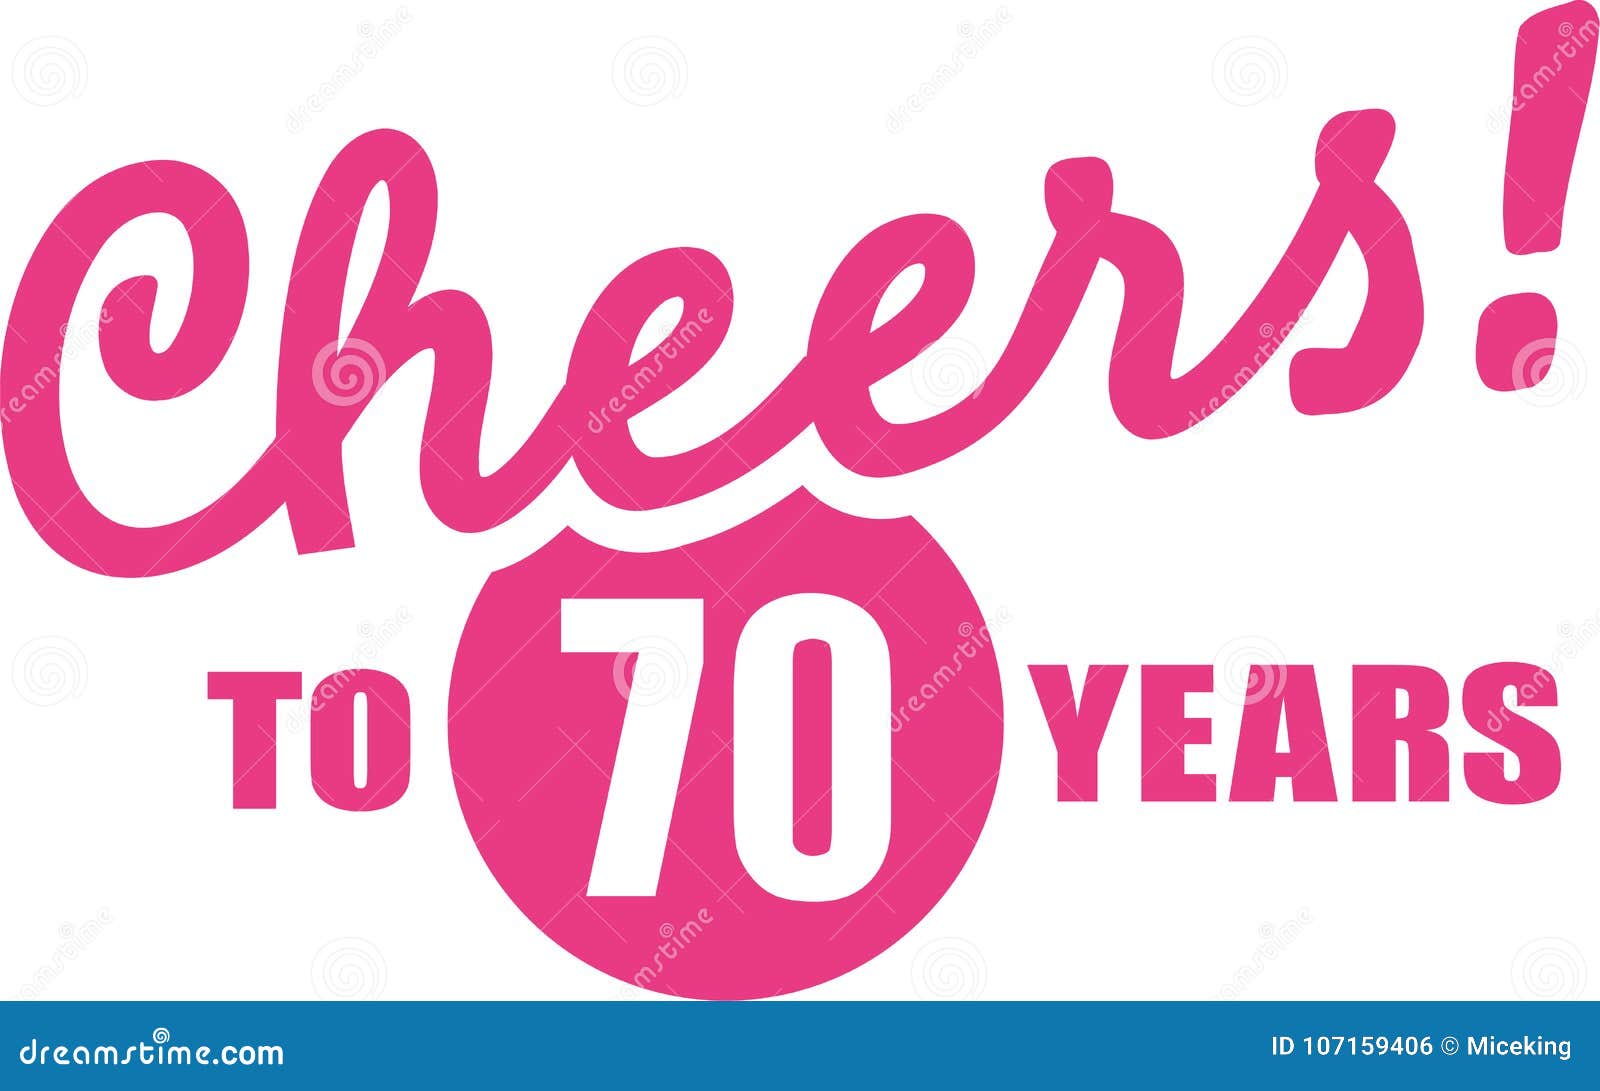 Verwonderlijk Cheers To 70 Years - 70th Birthday Stock Vector - Illustration of AS-69